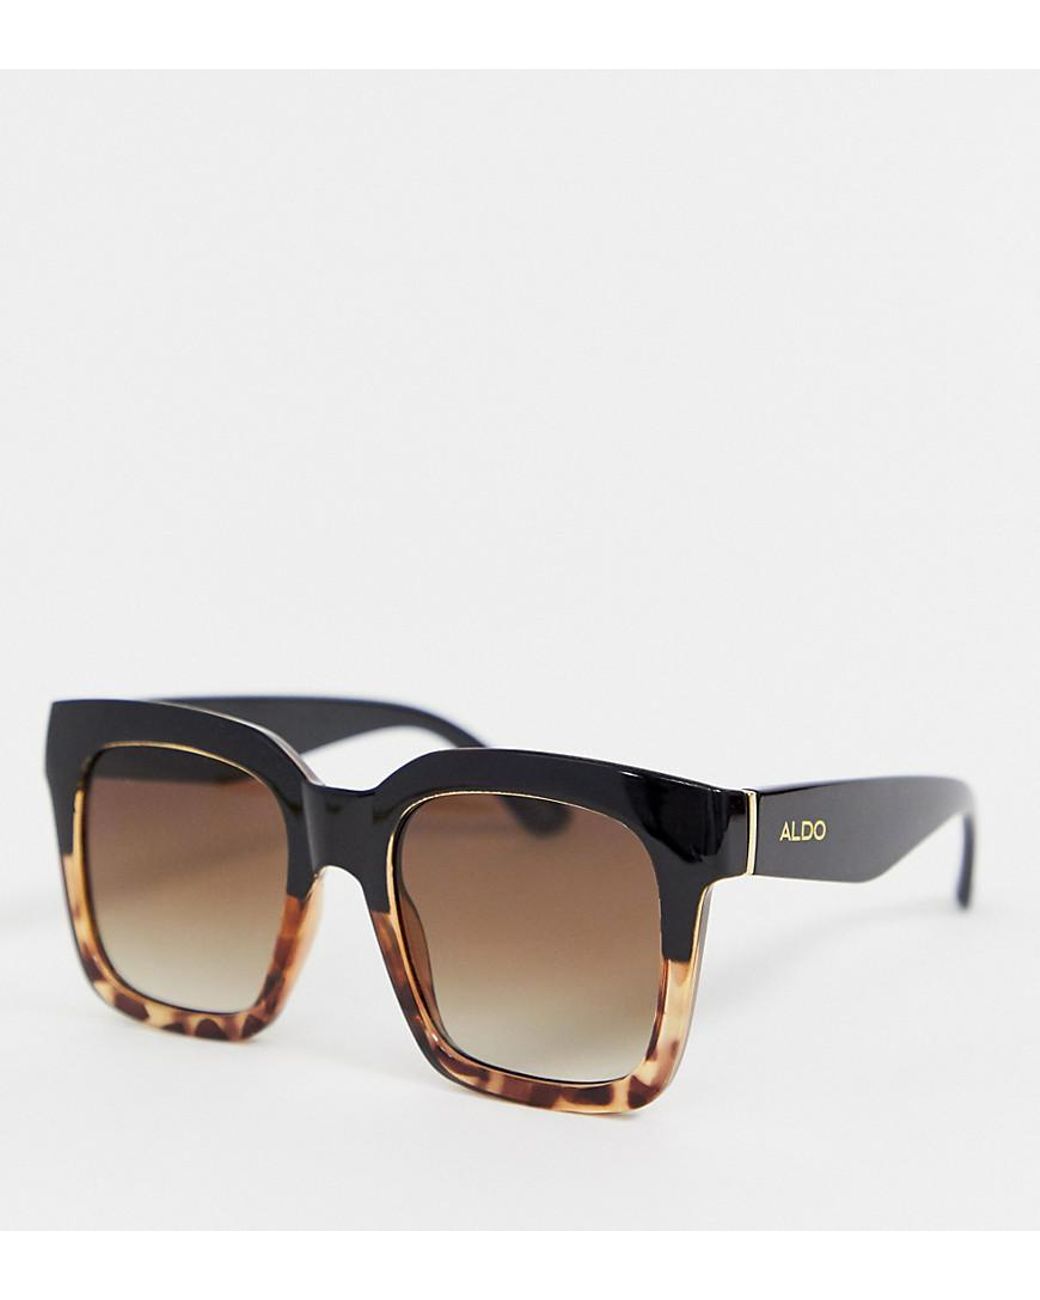 ALDO Tortoiseshell Oversized Sunglasses in Brown | Lyst